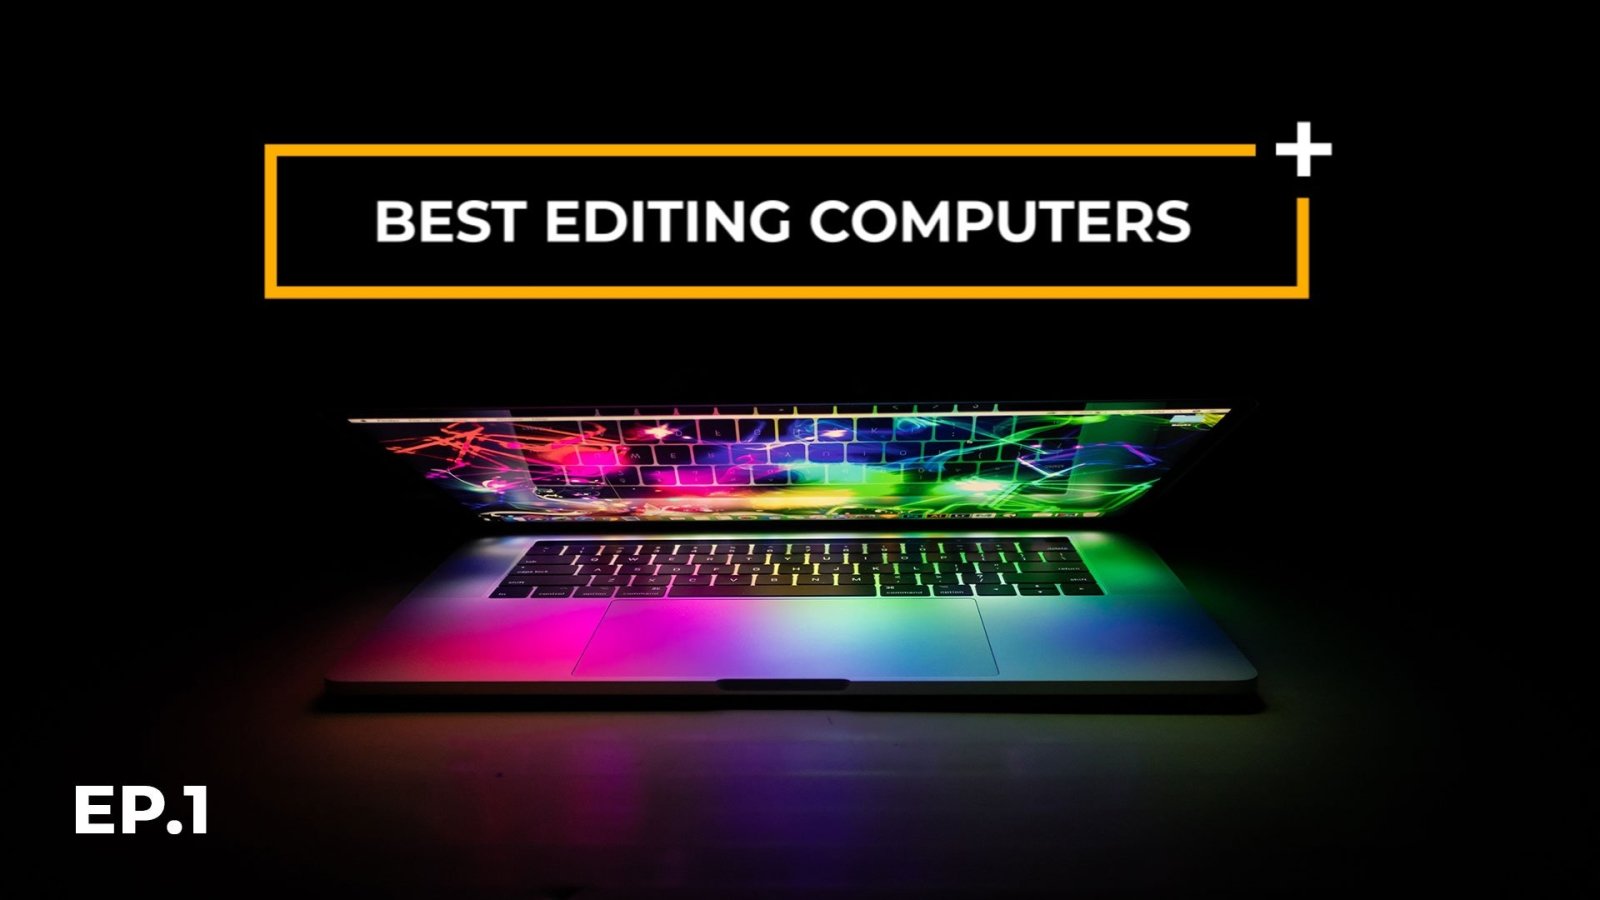 Editors Essentials Ep1 - Best Computer for Video Editing - Editors Keys